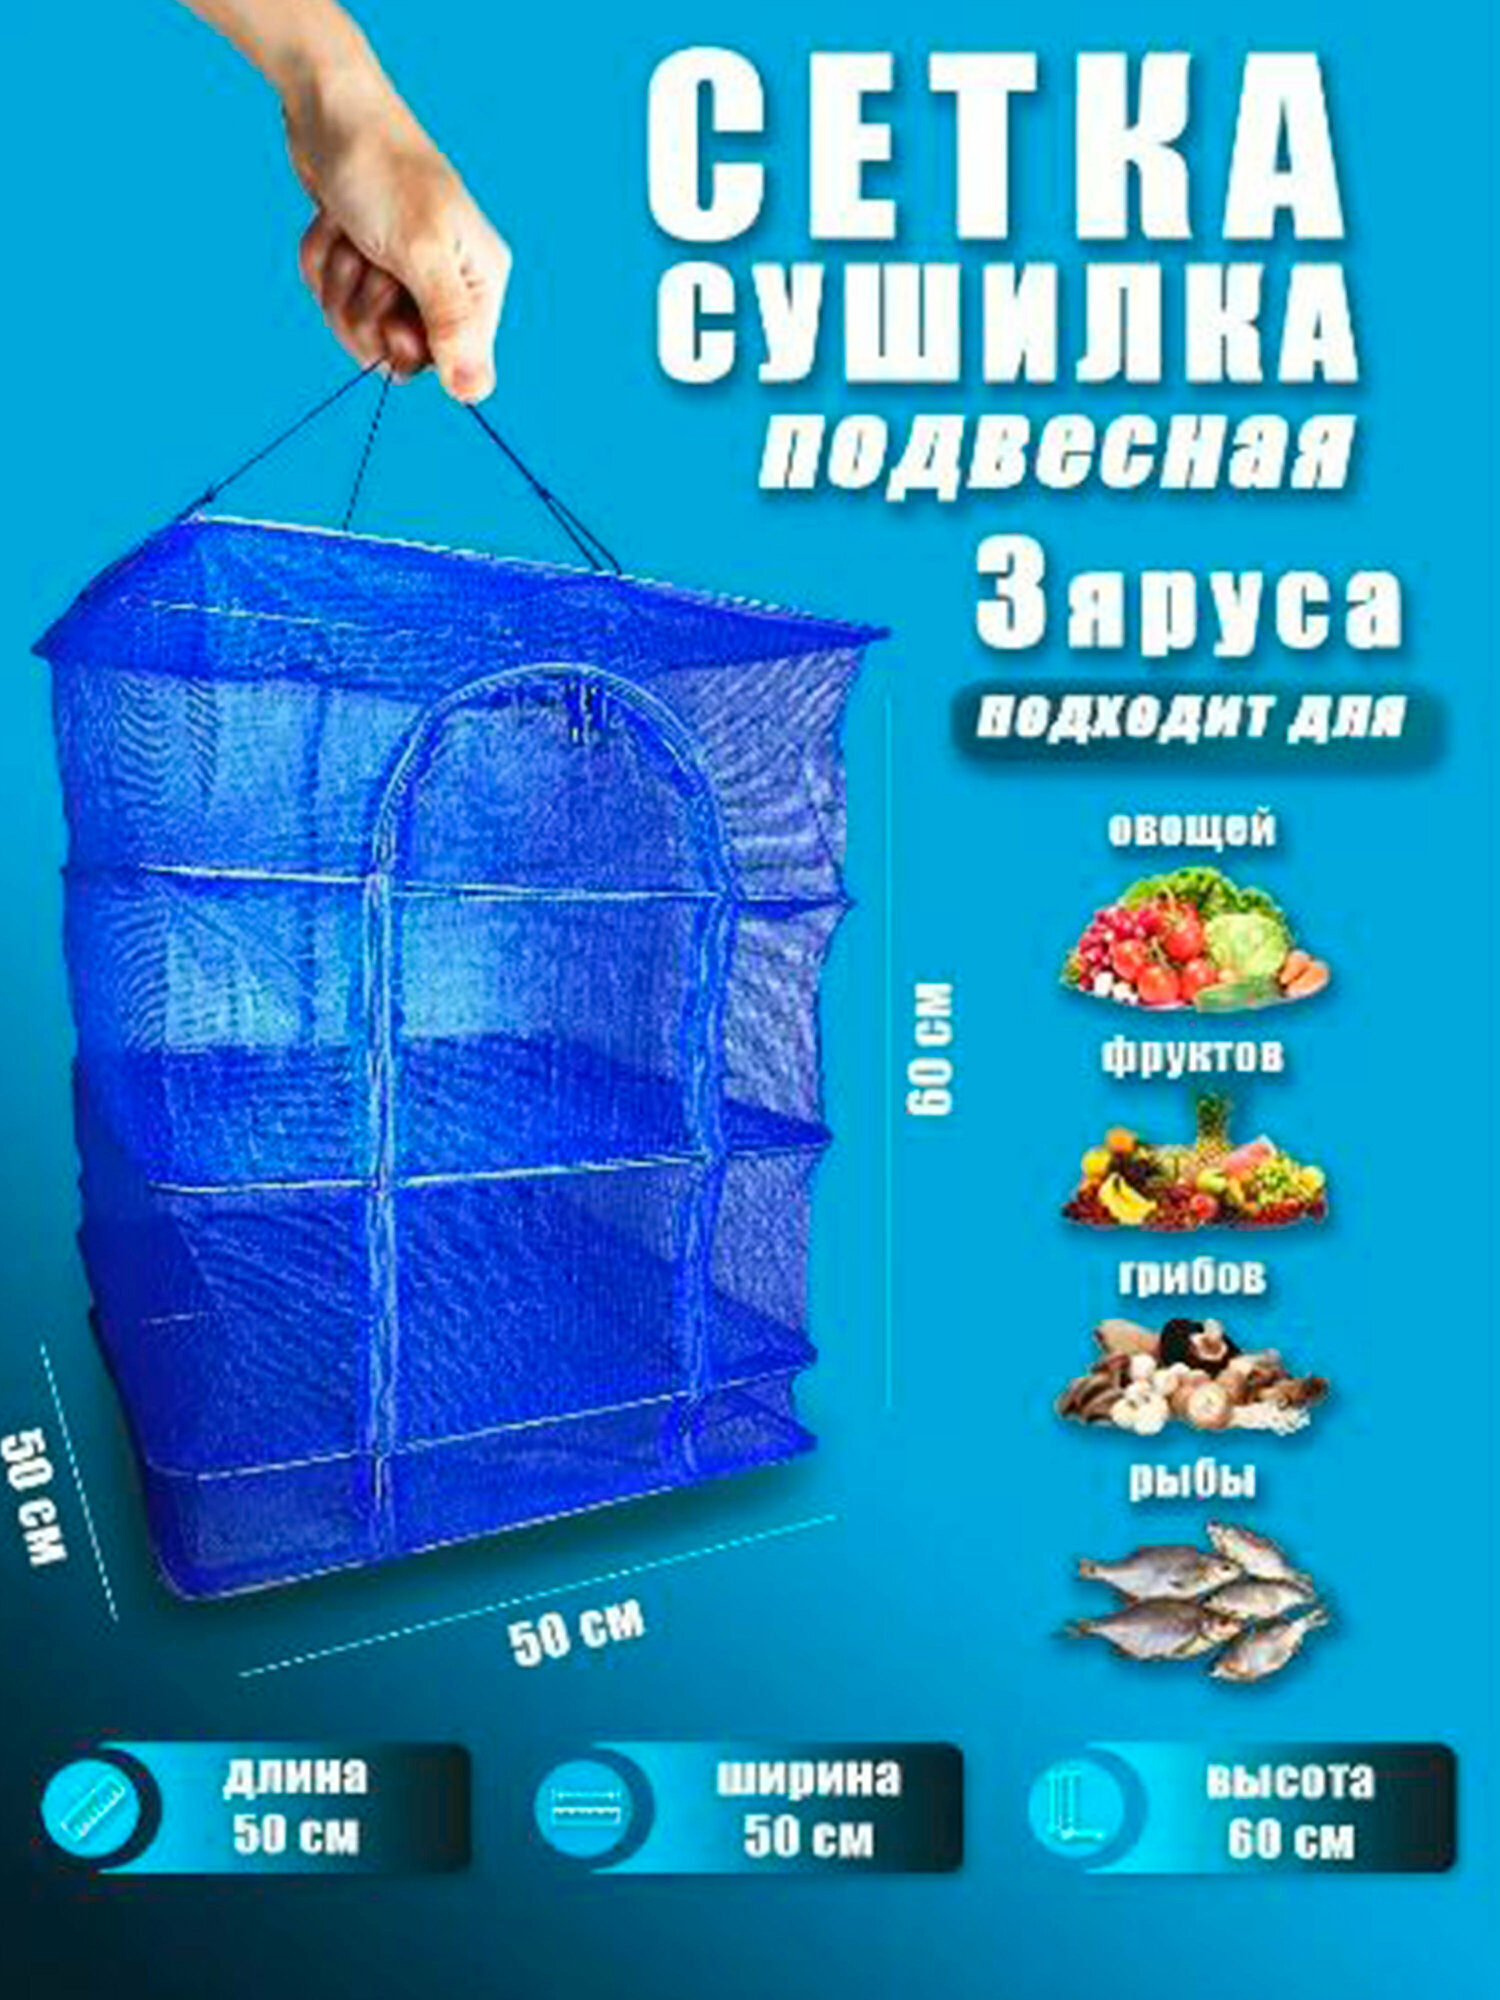 Сушилка для рыбы фруктов и овощей 40х40